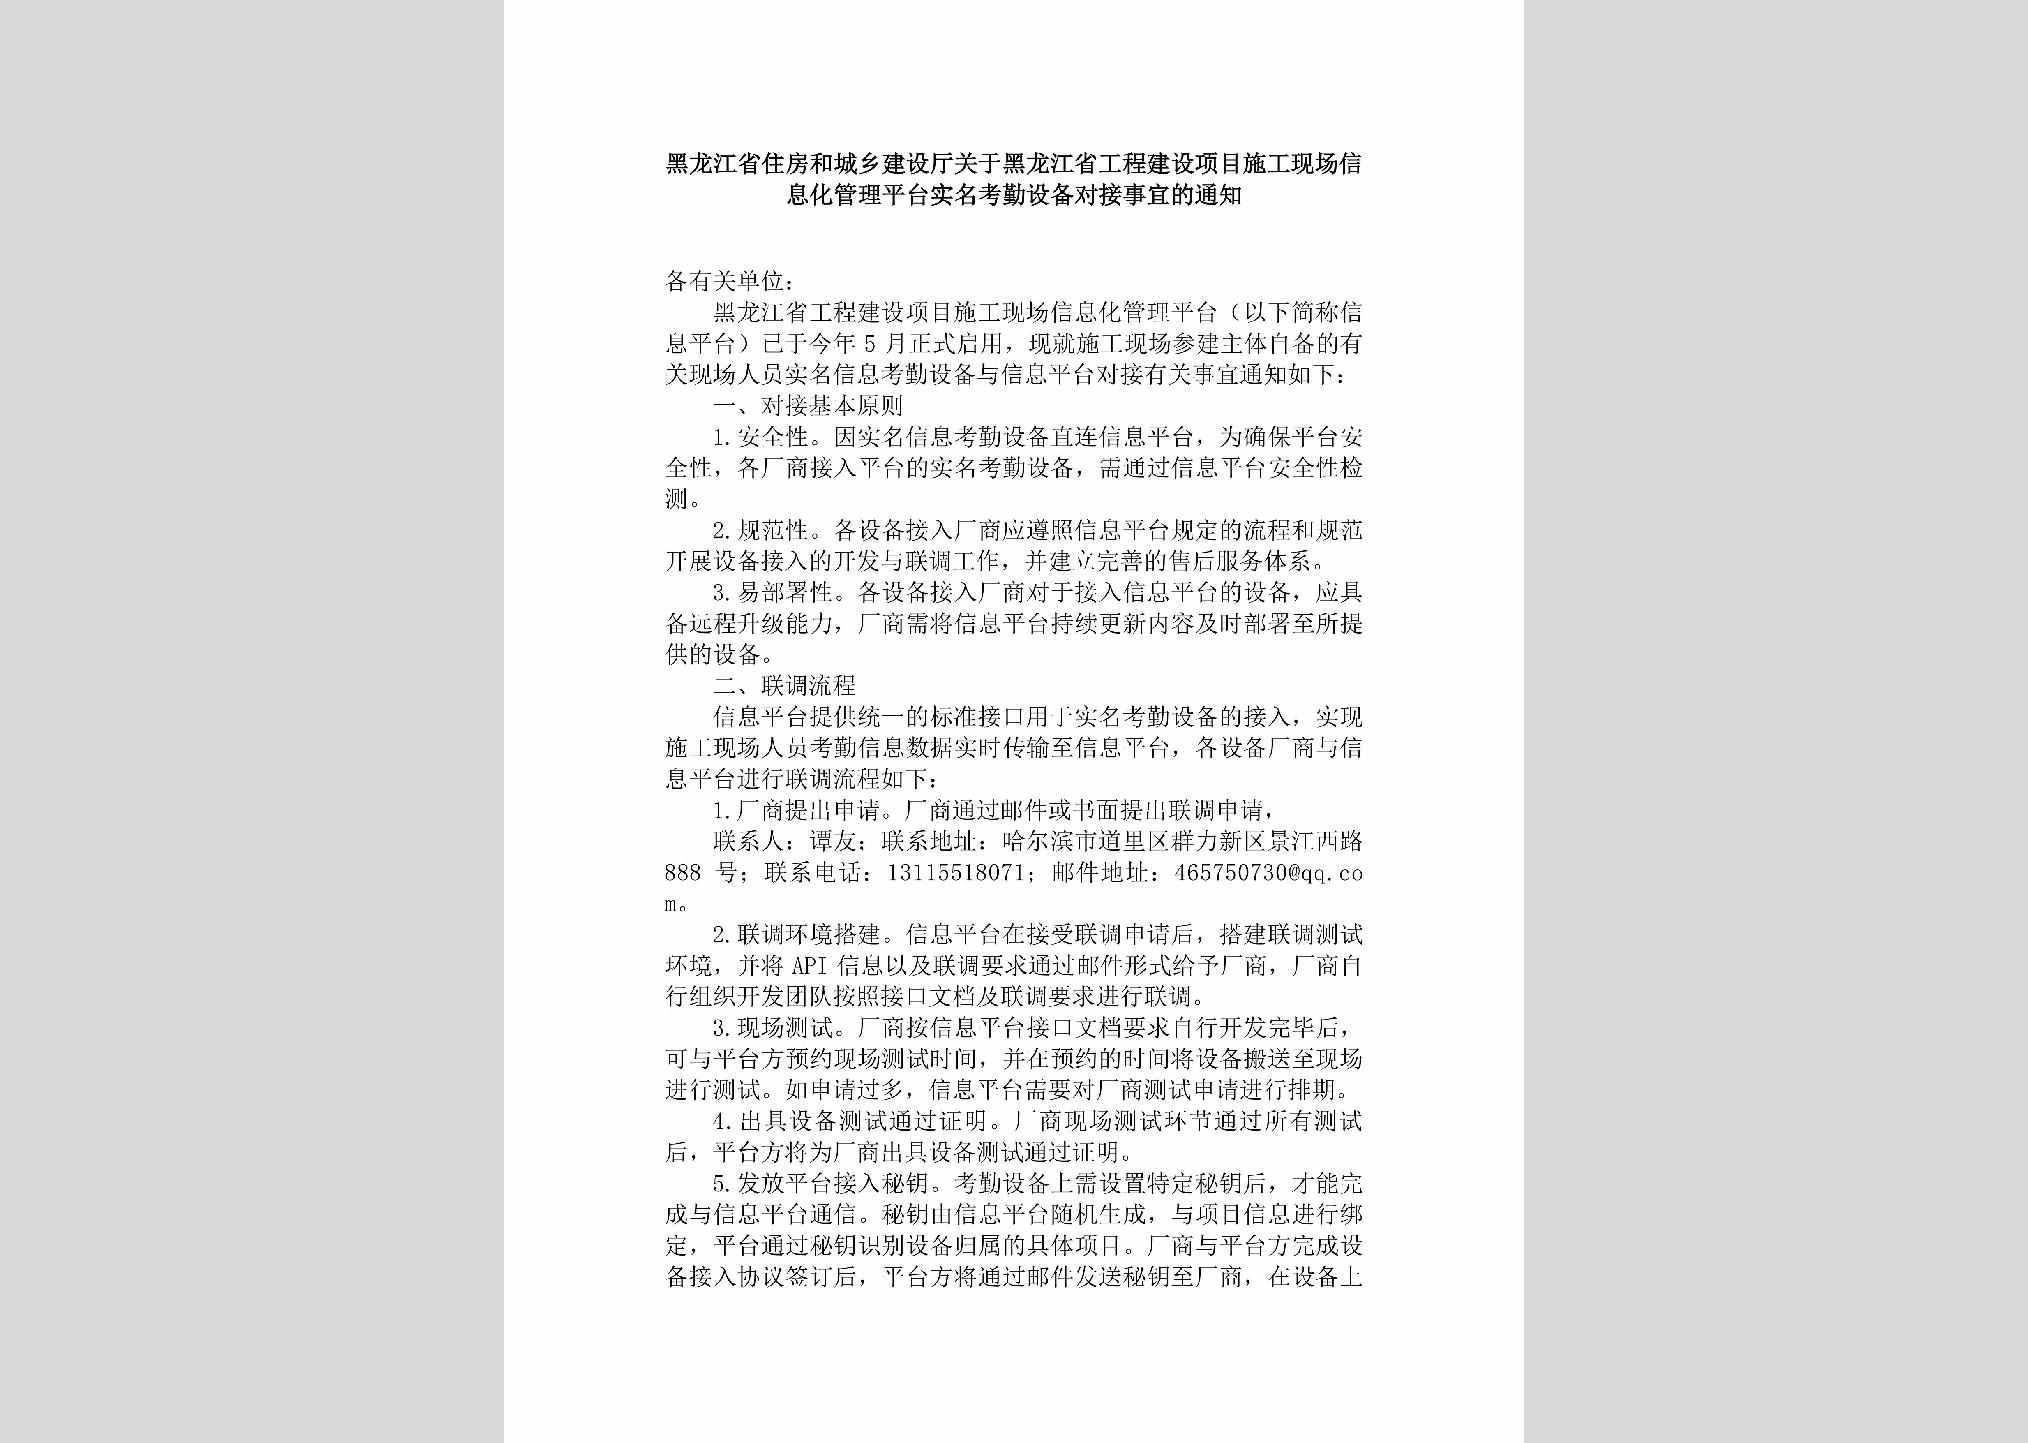 HLJ-GCJSXMSG-2019：黑龙江省住房和城乡建设厅关于黑龙江省工程建设项目施工现场信息化管理平台实名考勤设备对接事宜的通知